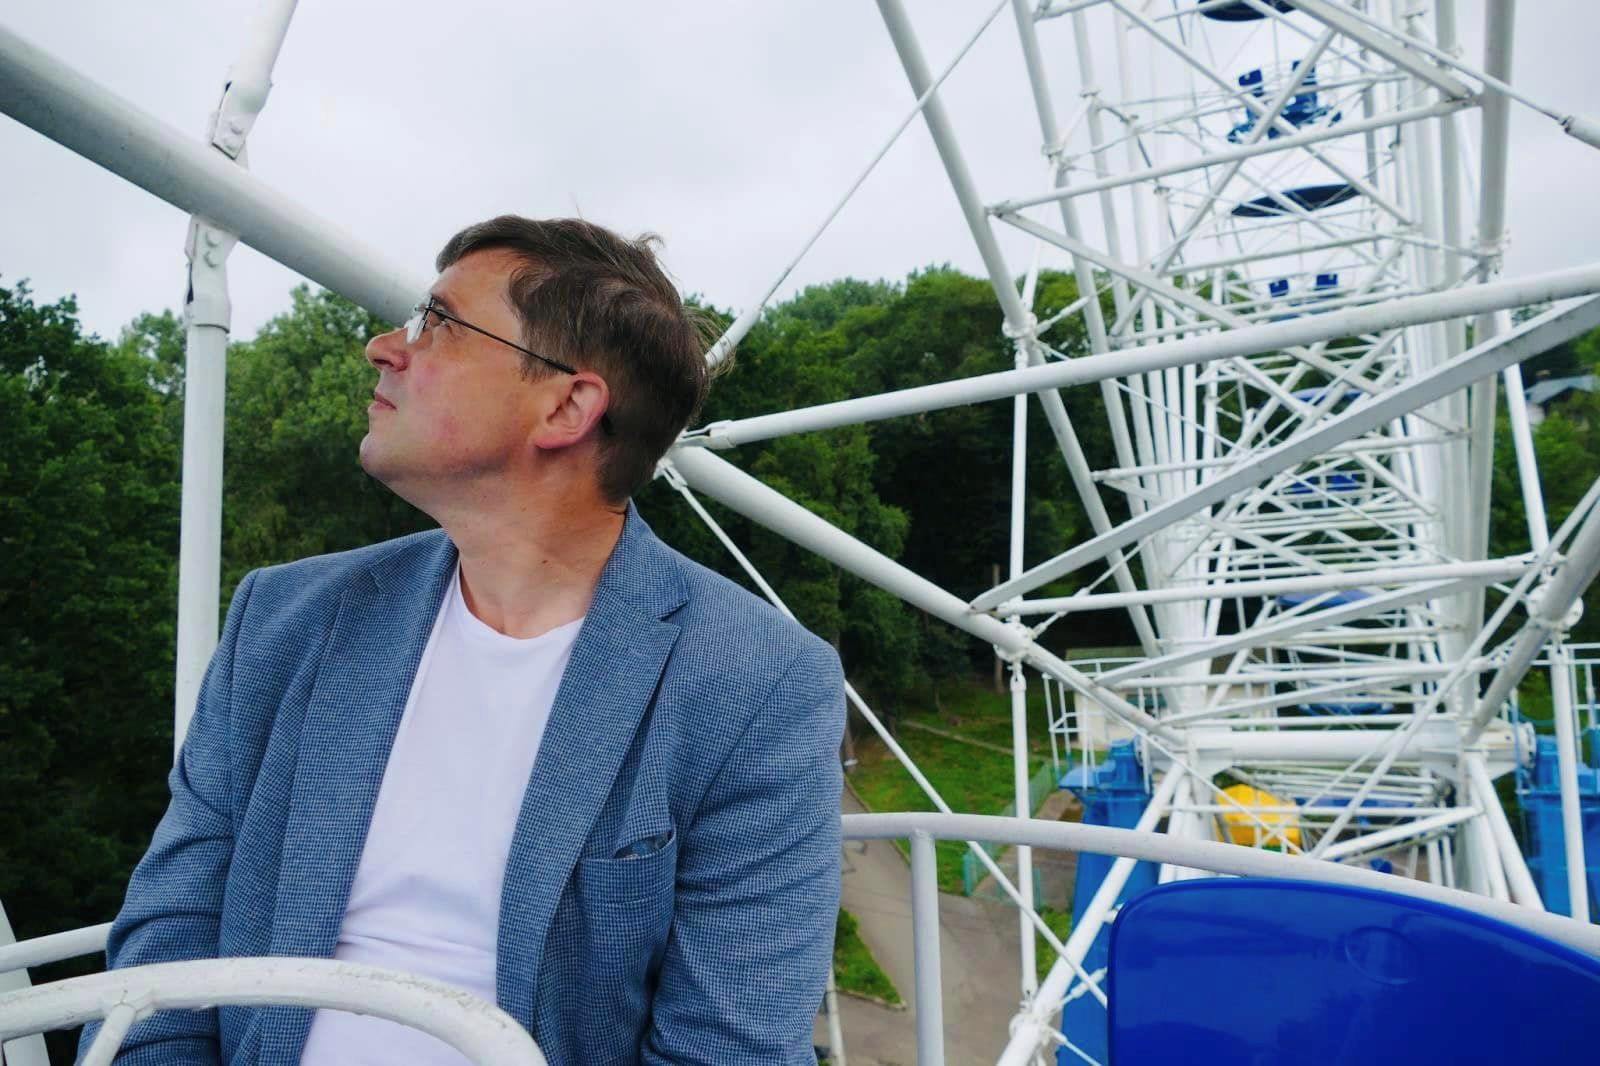 Мер Калуша “випробував” колесо огляду у парку після скарг у мережі на справність атракціону (ФОТО)